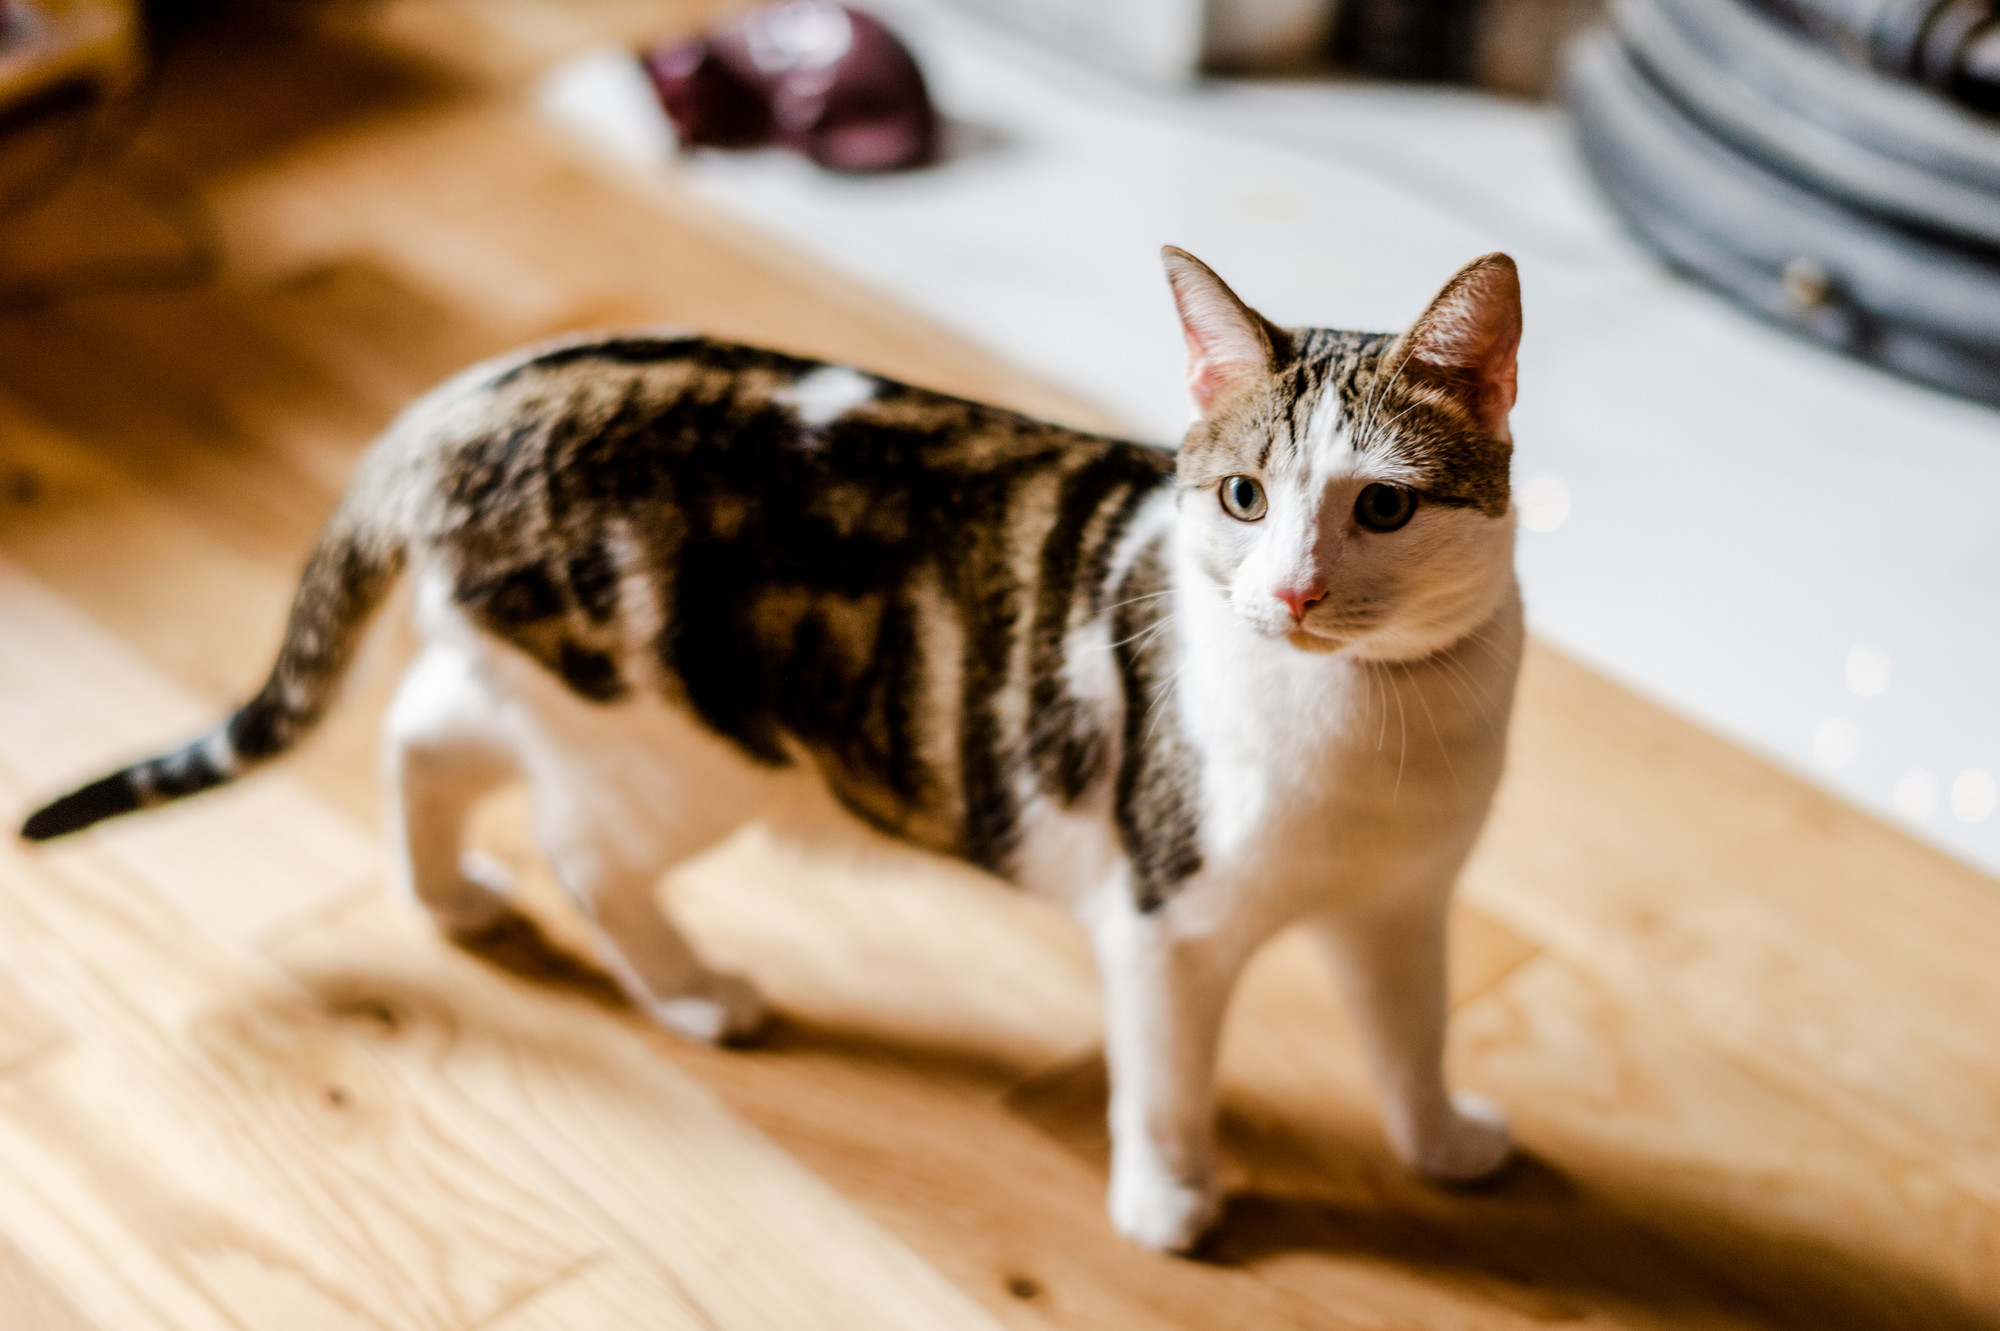 Tabby cat on wooden flooring